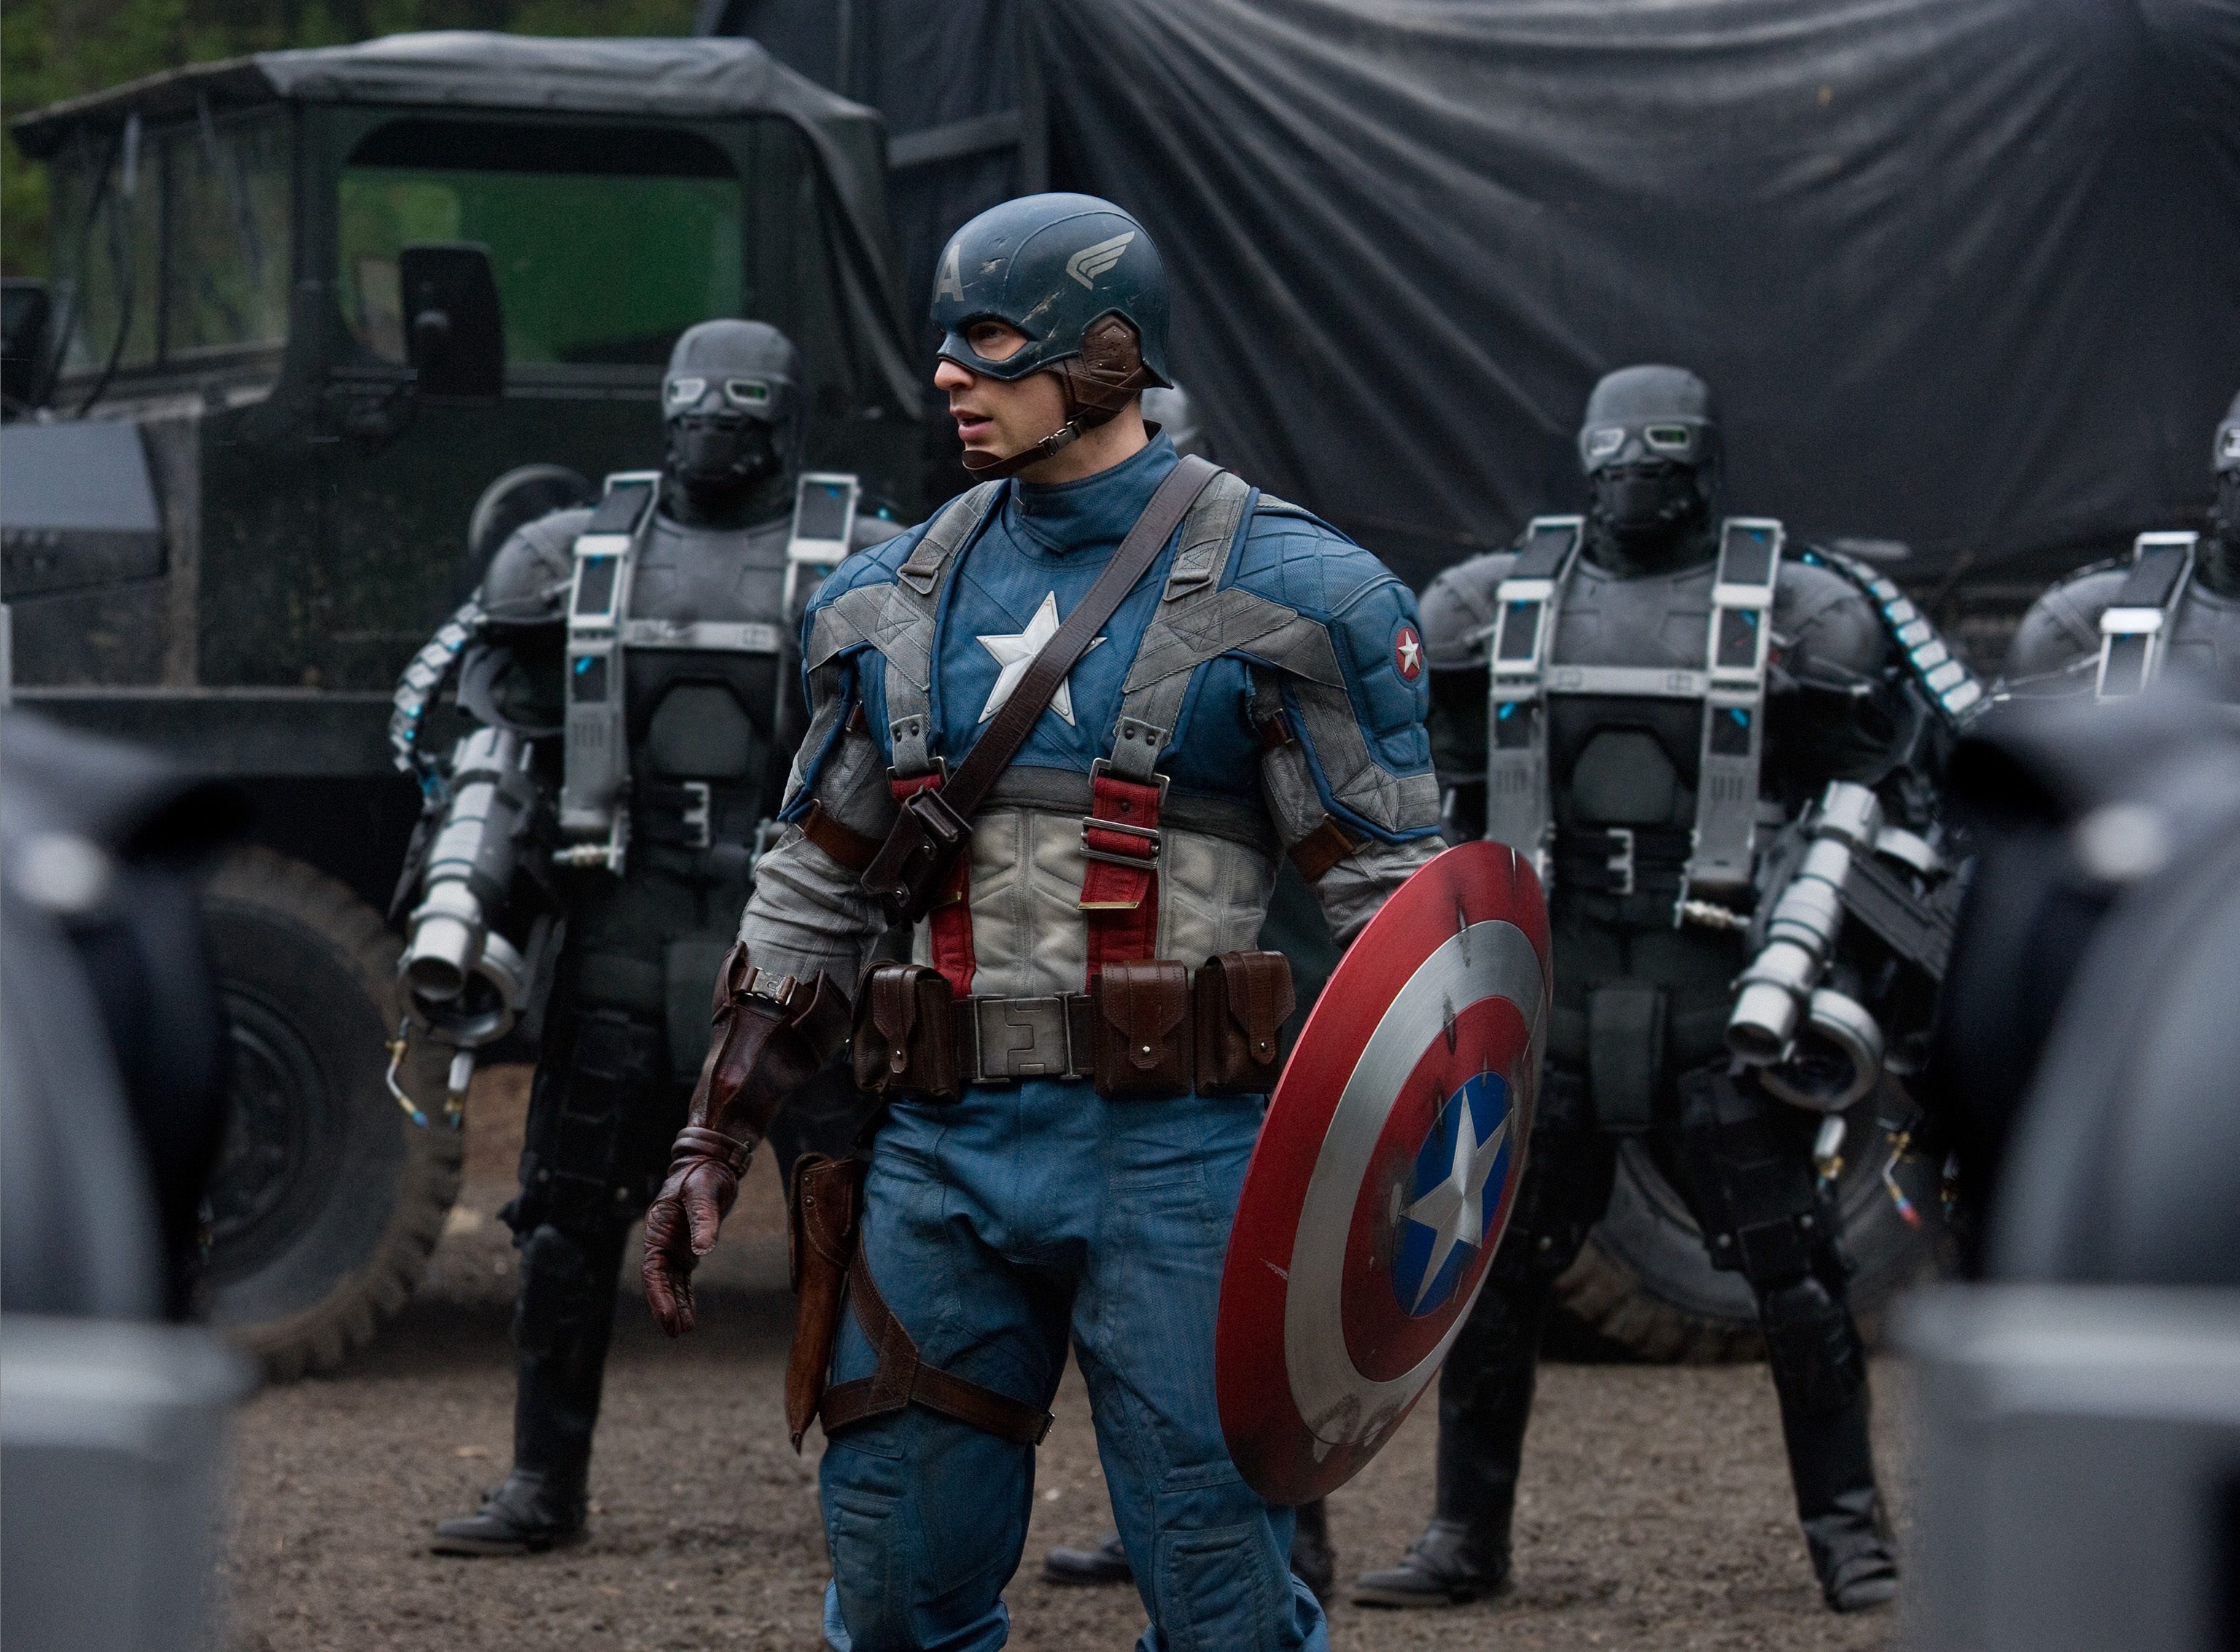 Steve fighting Hydra America, The First Avenger Avengers photo